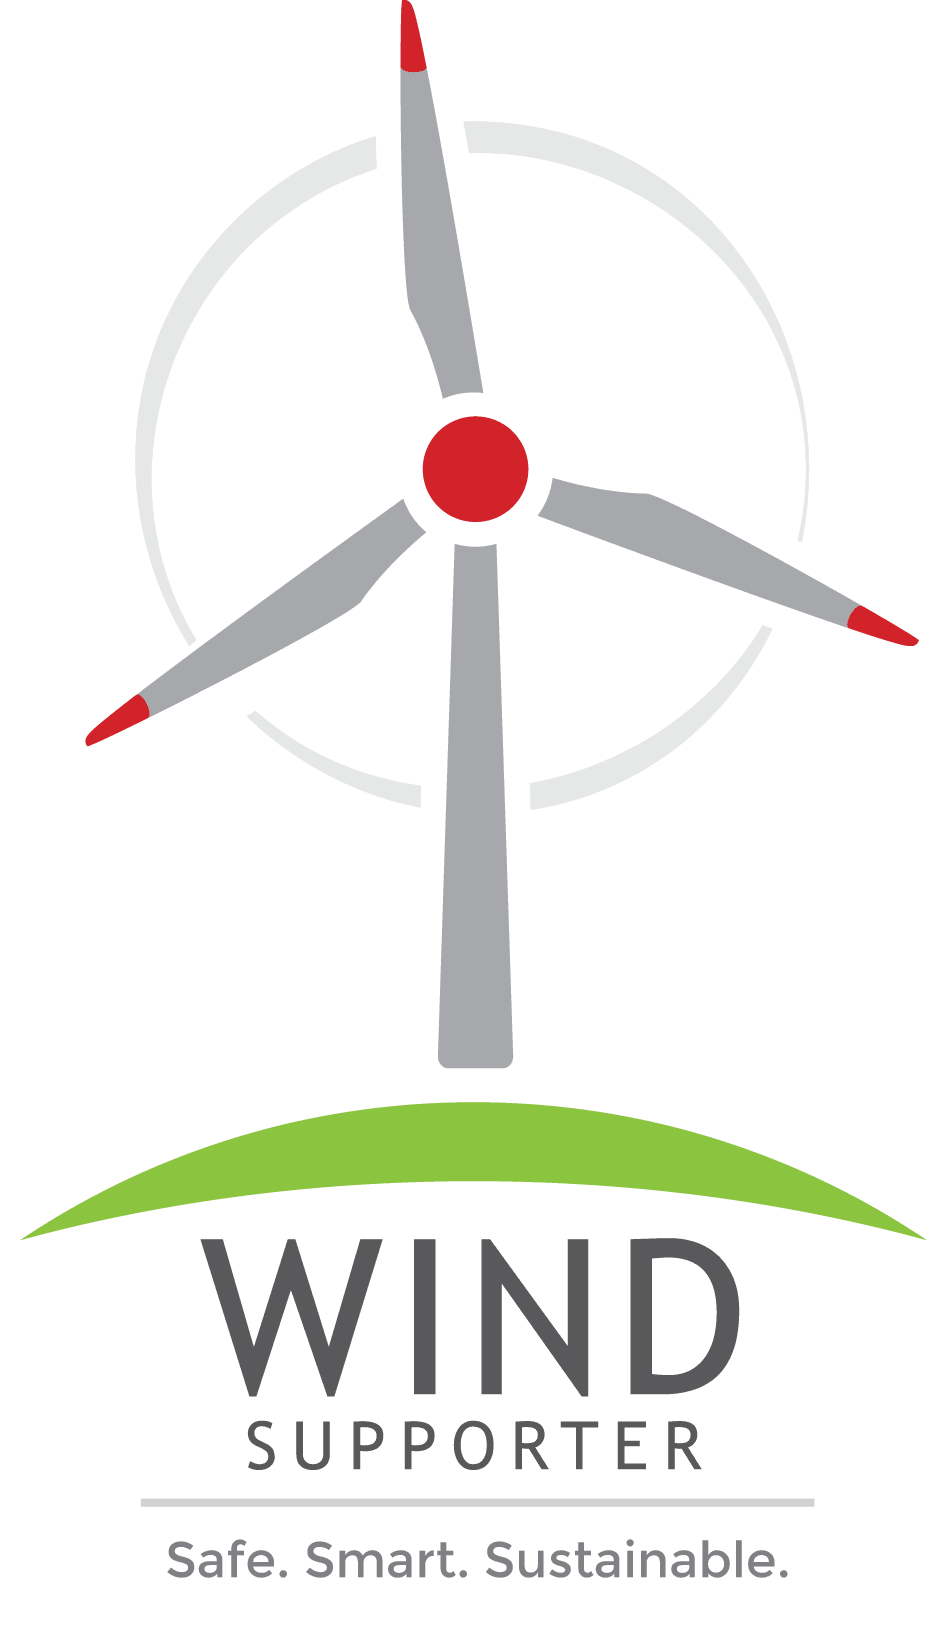 Renewable Energy Certificate